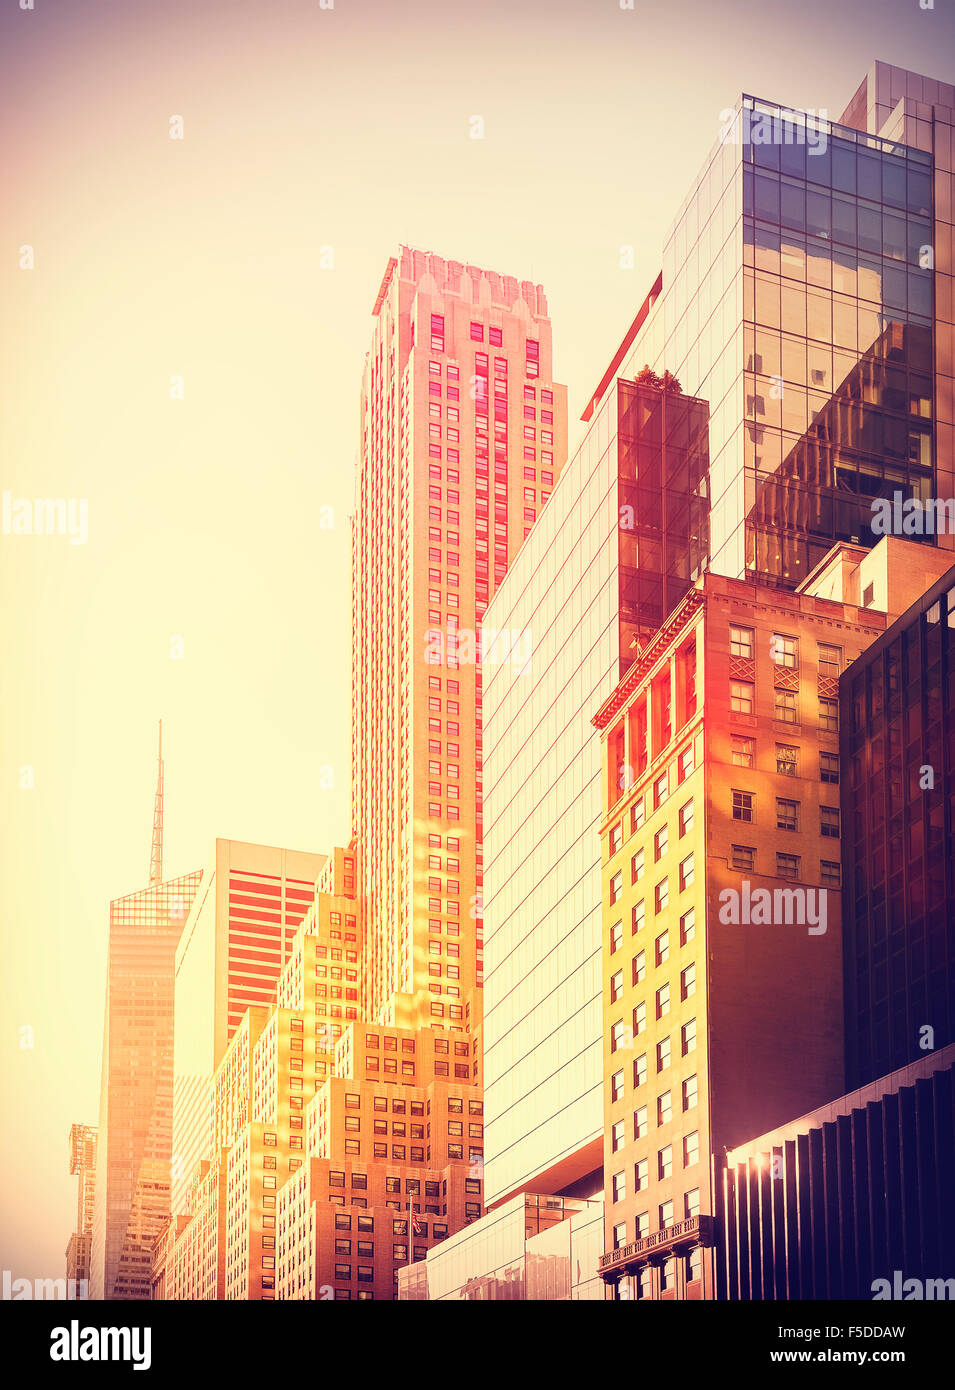 Vintage instagram foto filtrada de los rascacielos de Manhattan al atardecer, la ciudad de Nueva York, EE.UU.. Foto de stock